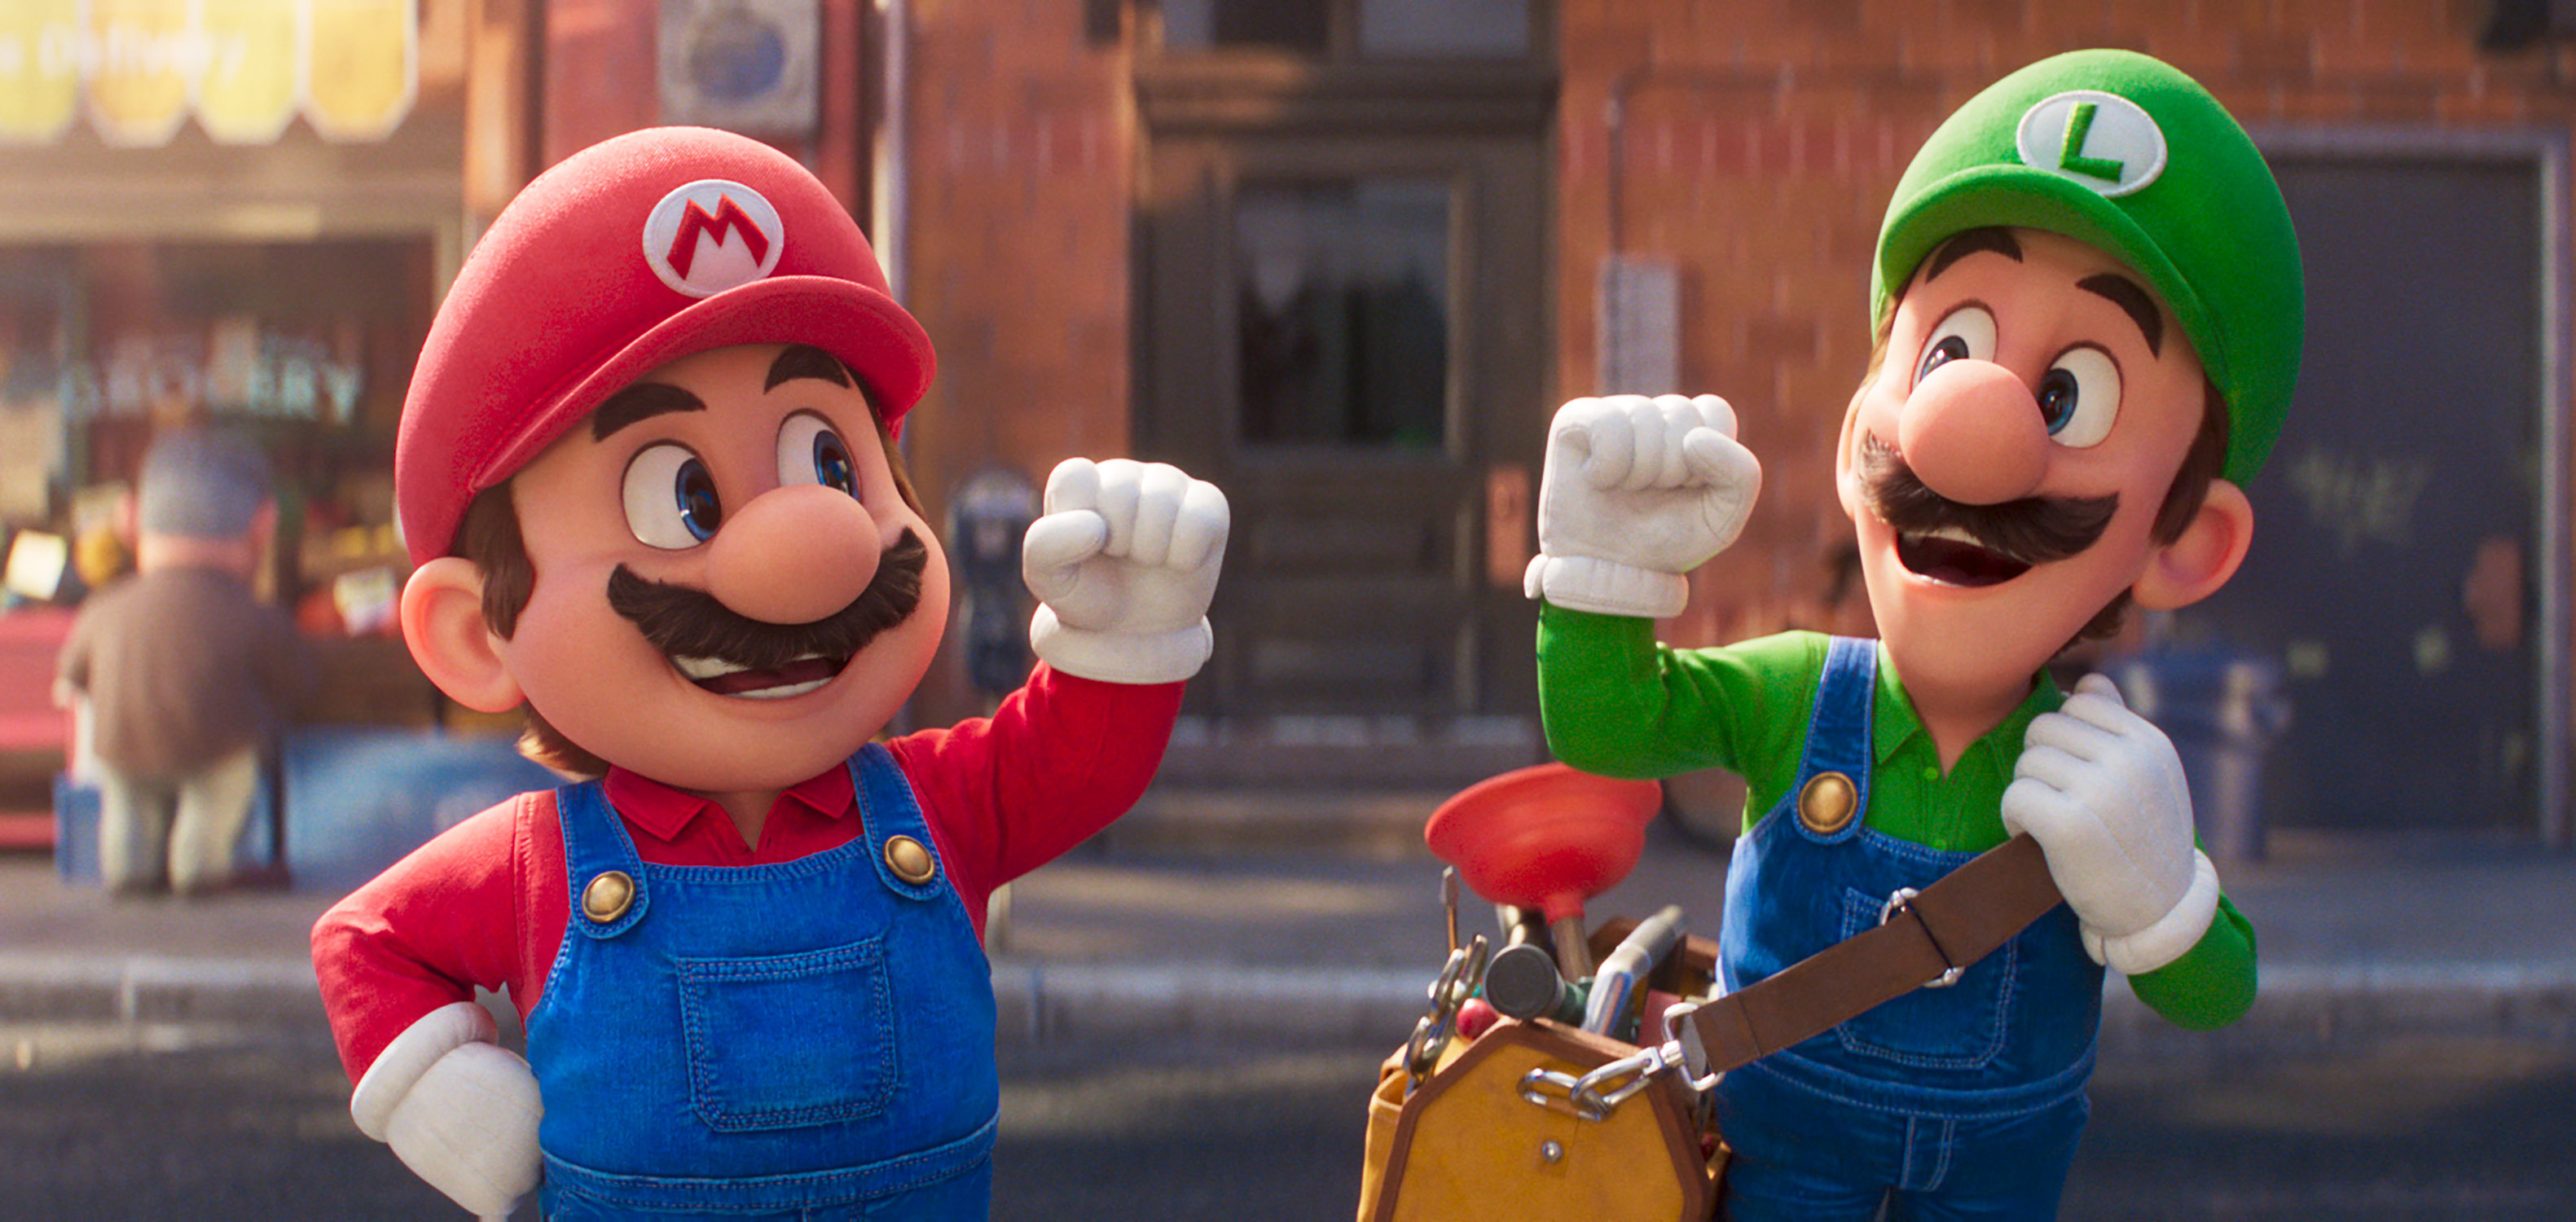 Chris Pratt pone la voz a Mario y Charlie Day interpreta a Luigi en "Super Mario Bros. La Película". (Universal Pictures)